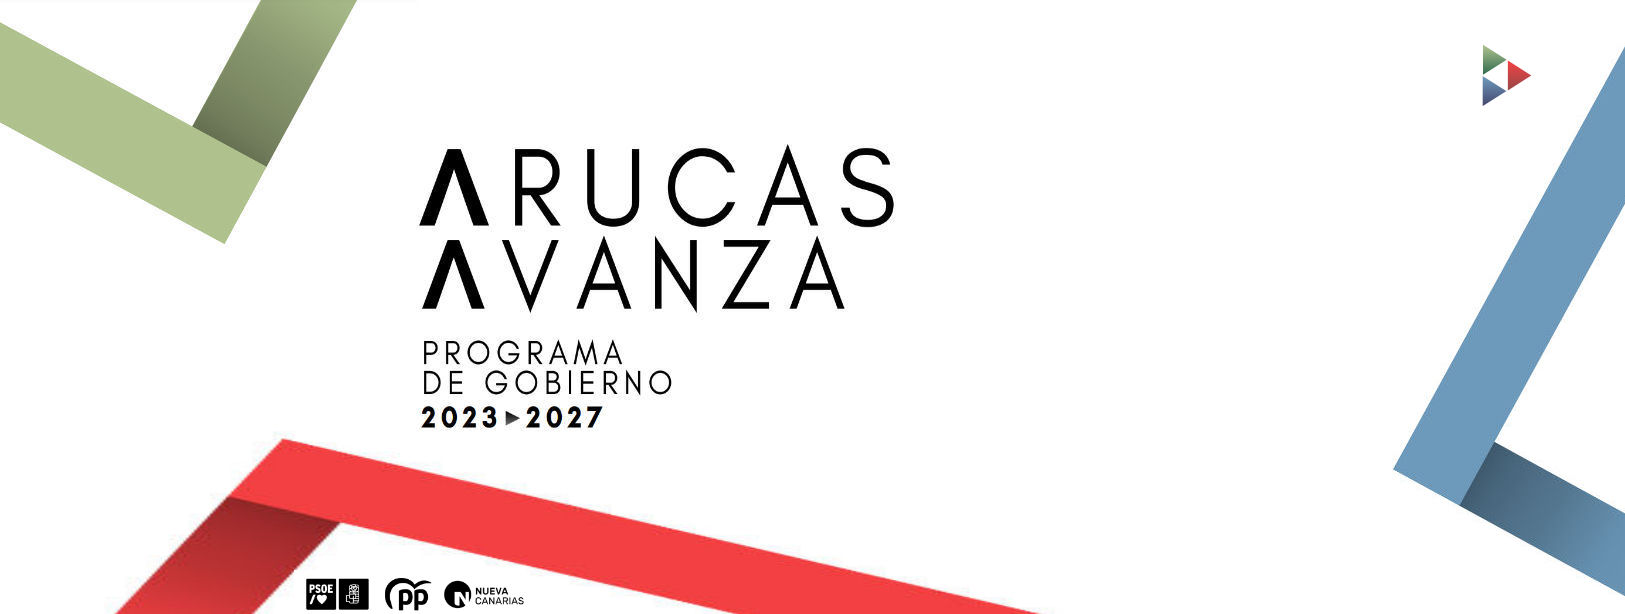 ARUCAS AVANZA - PROGRAMA DE GOBIERNO 2023 -2027